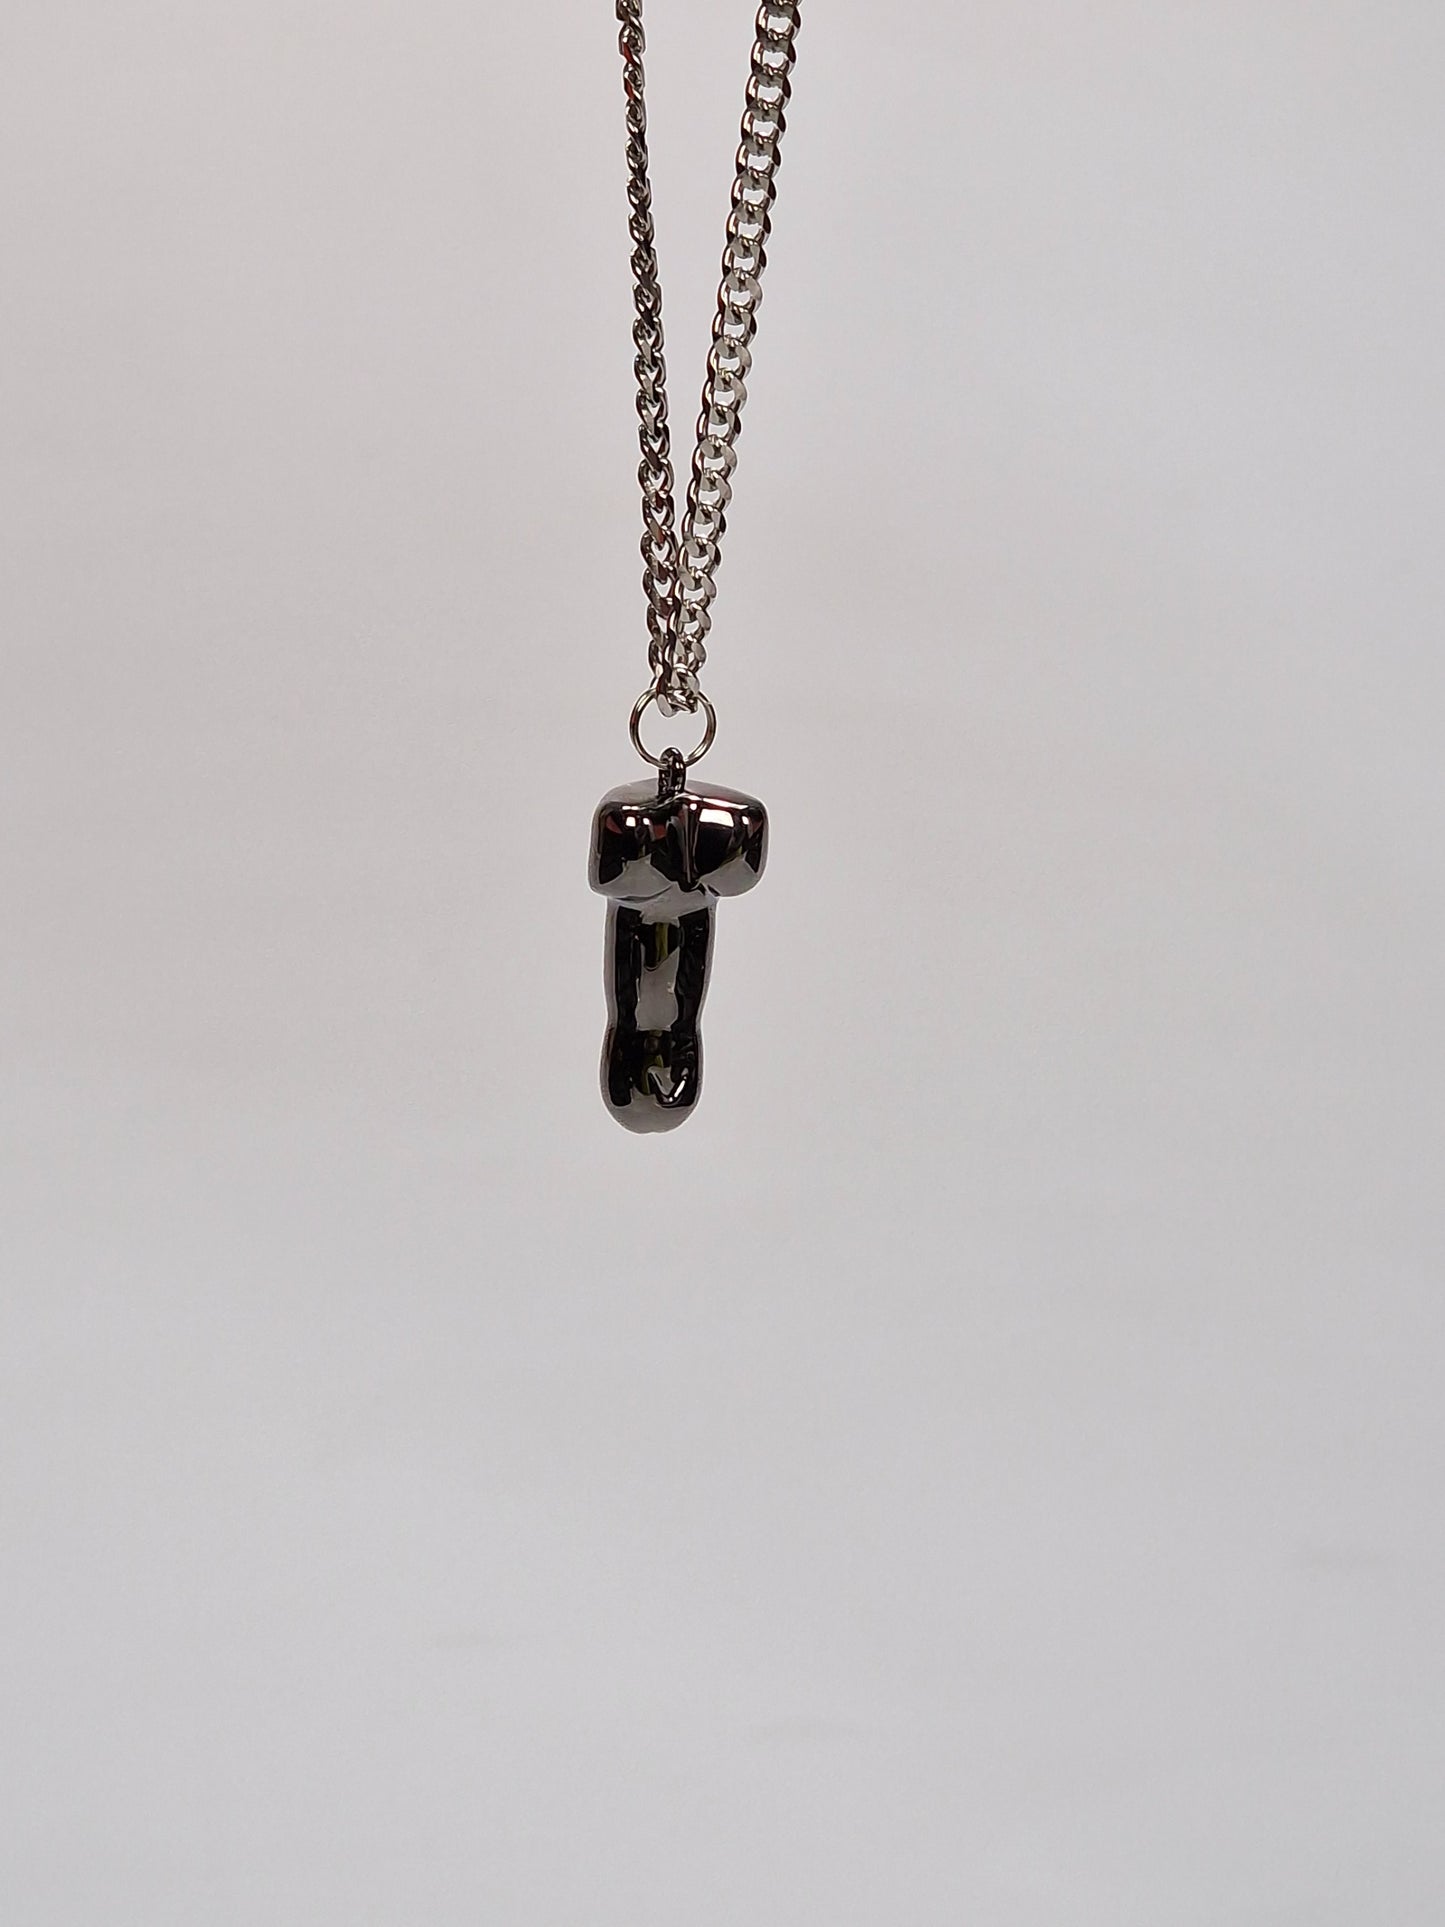 Ett vackert halsband med ett penisformat hänge. Hängsmycket är en snopp eller penis i svart metall på 2,5 cm